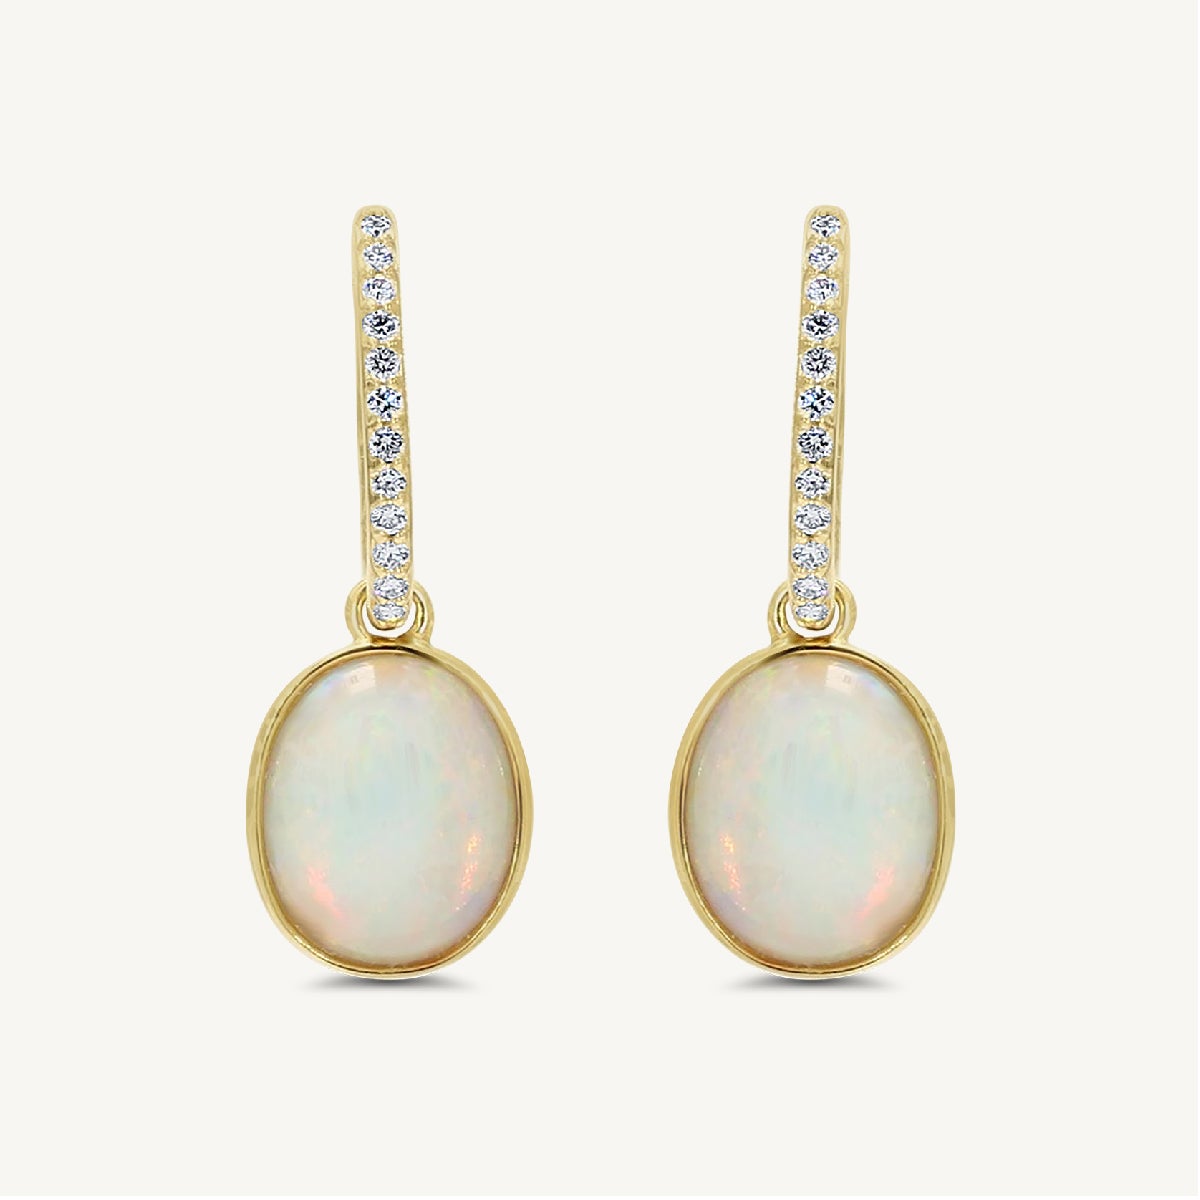 natürlicher ovaler Opal und weißer Diamant 4,30 Karat TW Gelbgold Tropfenohrringe